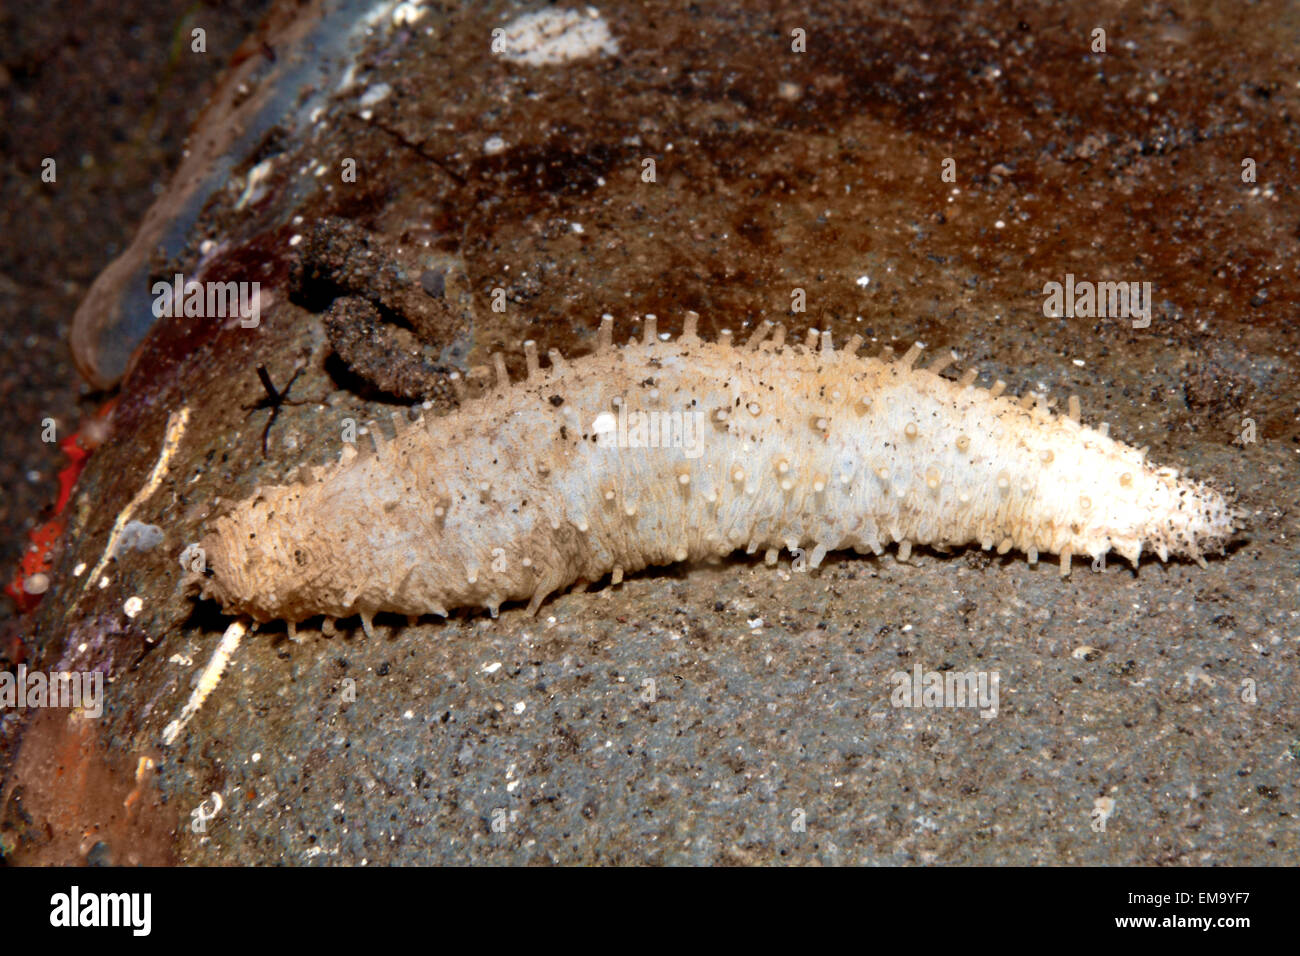 Las holoturias o pepinos de mar, posiblemente Labidodemas semperianum. Encontrado en la arena debajo de una roca. Tamaño de 50mm. Tulamben, Bali, Indonesia Foto de stock